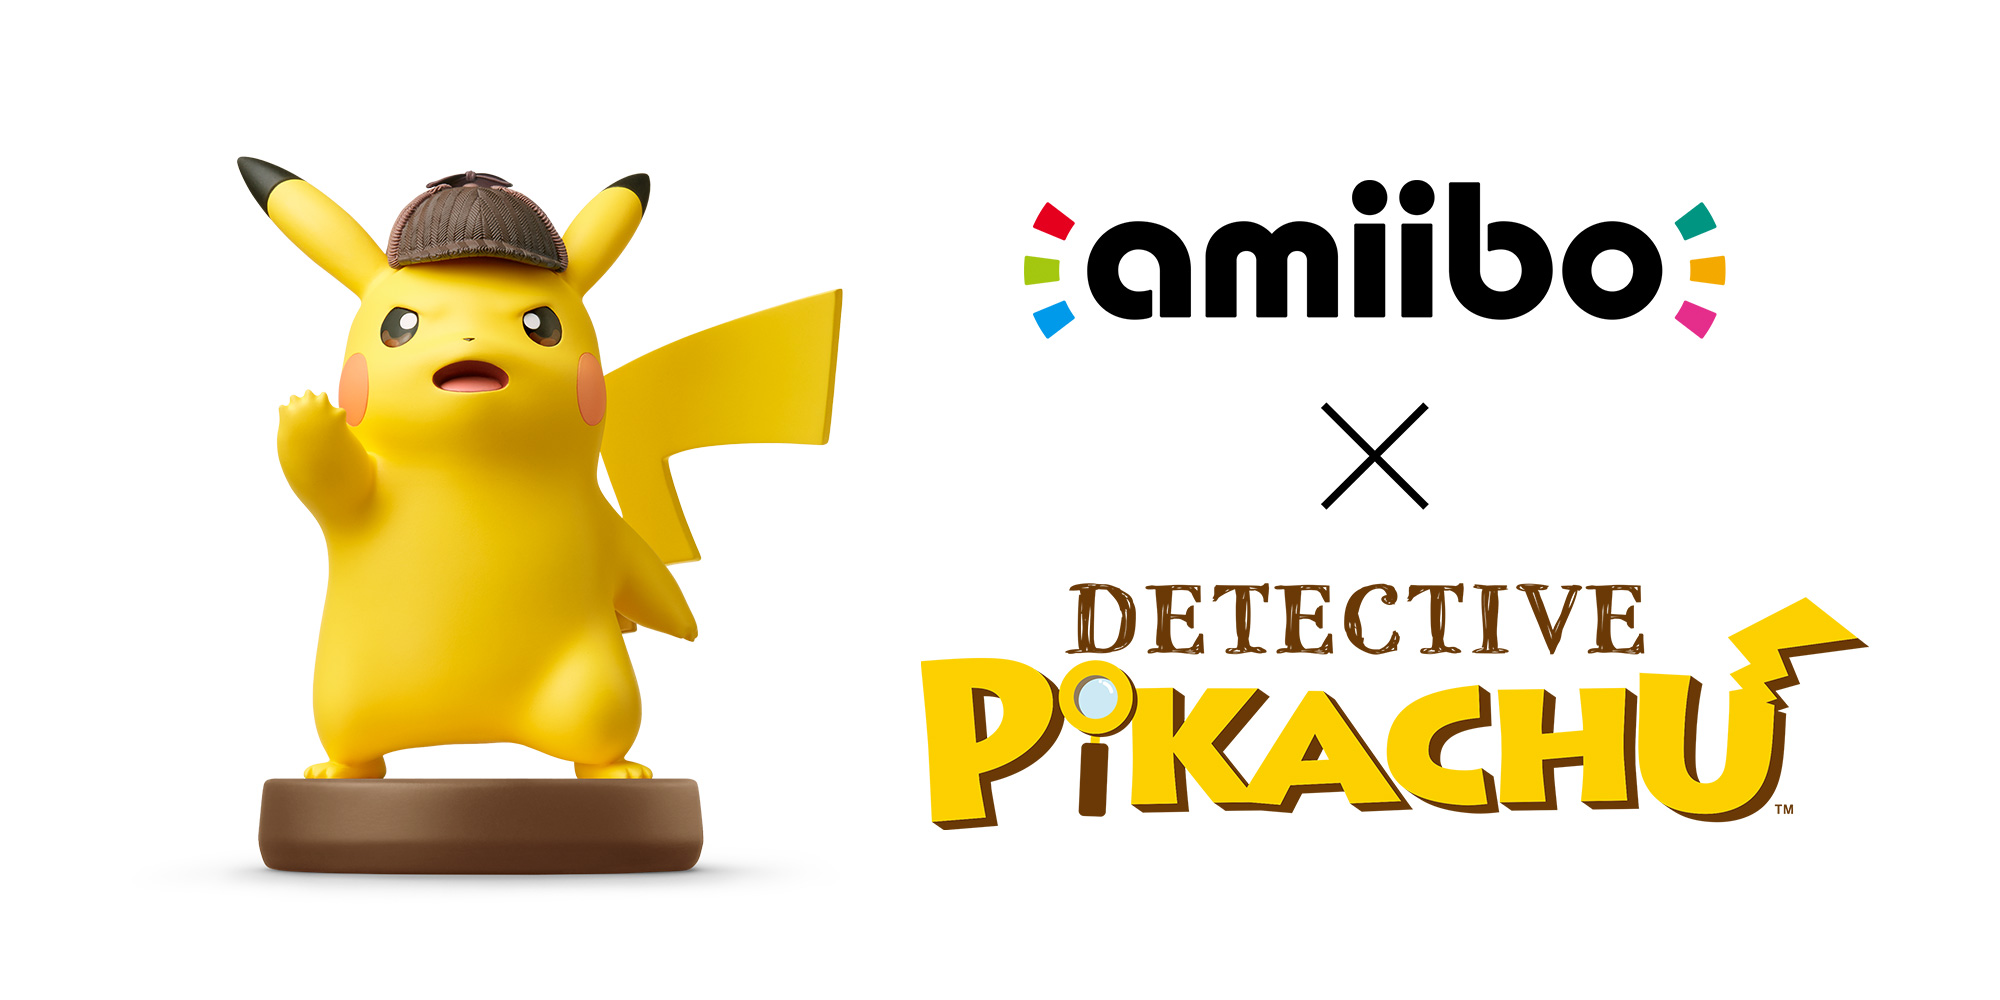 Tiempos antiguos Radar Espectador Detective Pikachu | amiibo | Detective Pikachu amiibo | Nintendo